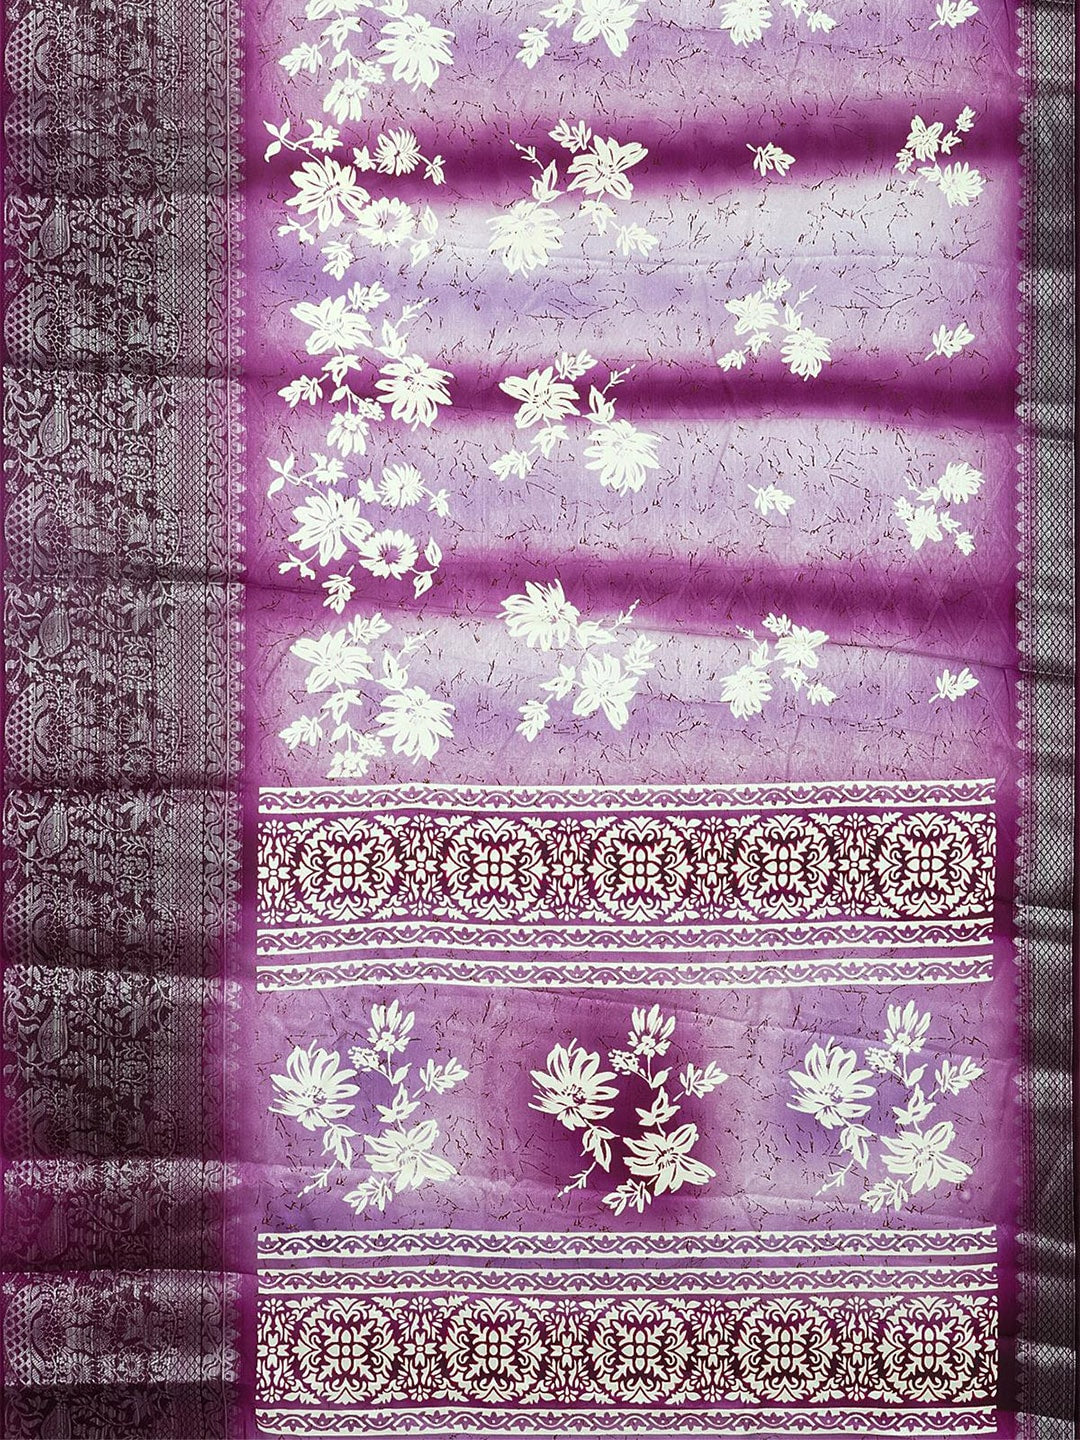 Kalamandir Floral Printed Zari Saree - Distacart